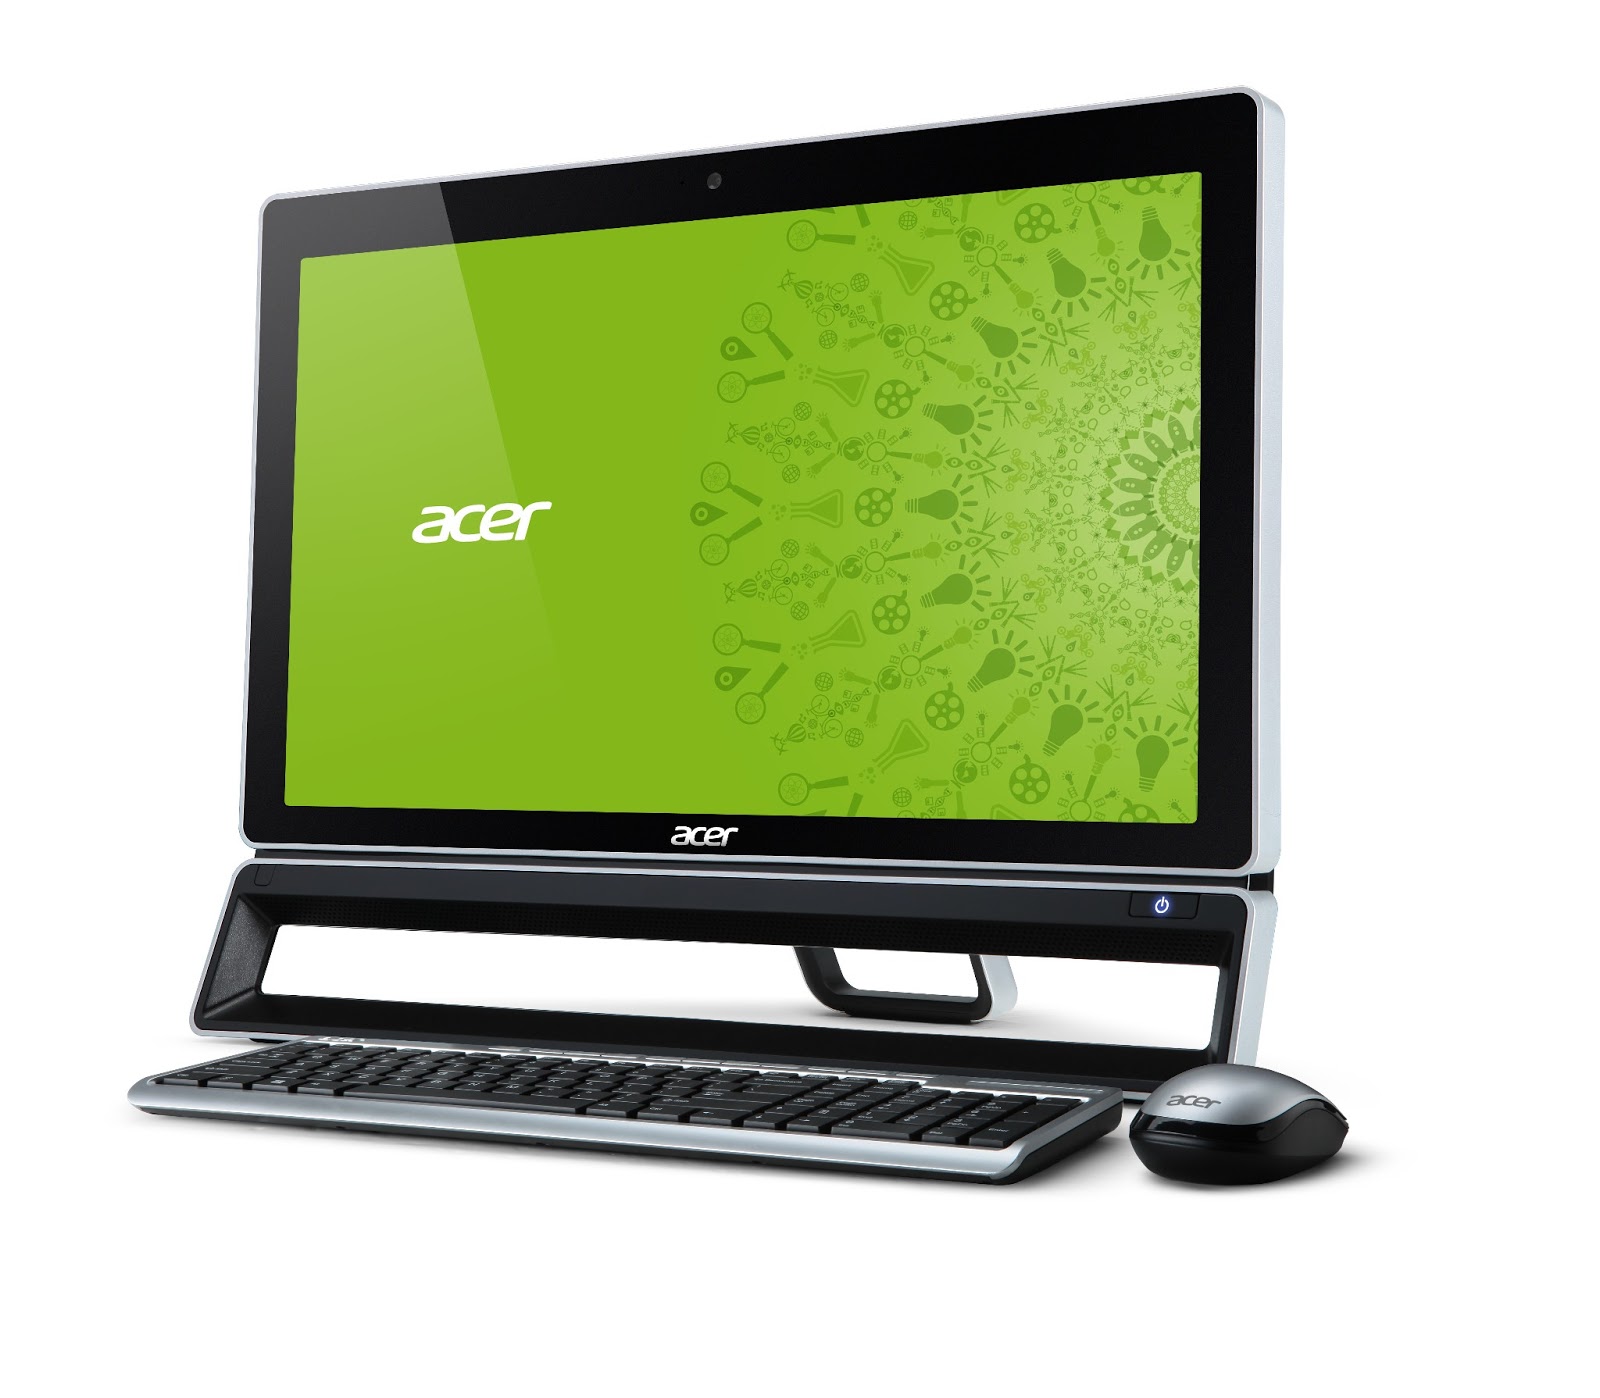 Моноблоки acer москва. Моноблок Acer Aspire zc600. Моноблок Acer zs600. Моноблок Acer Core i5. Моноблок Acer SM 0626.